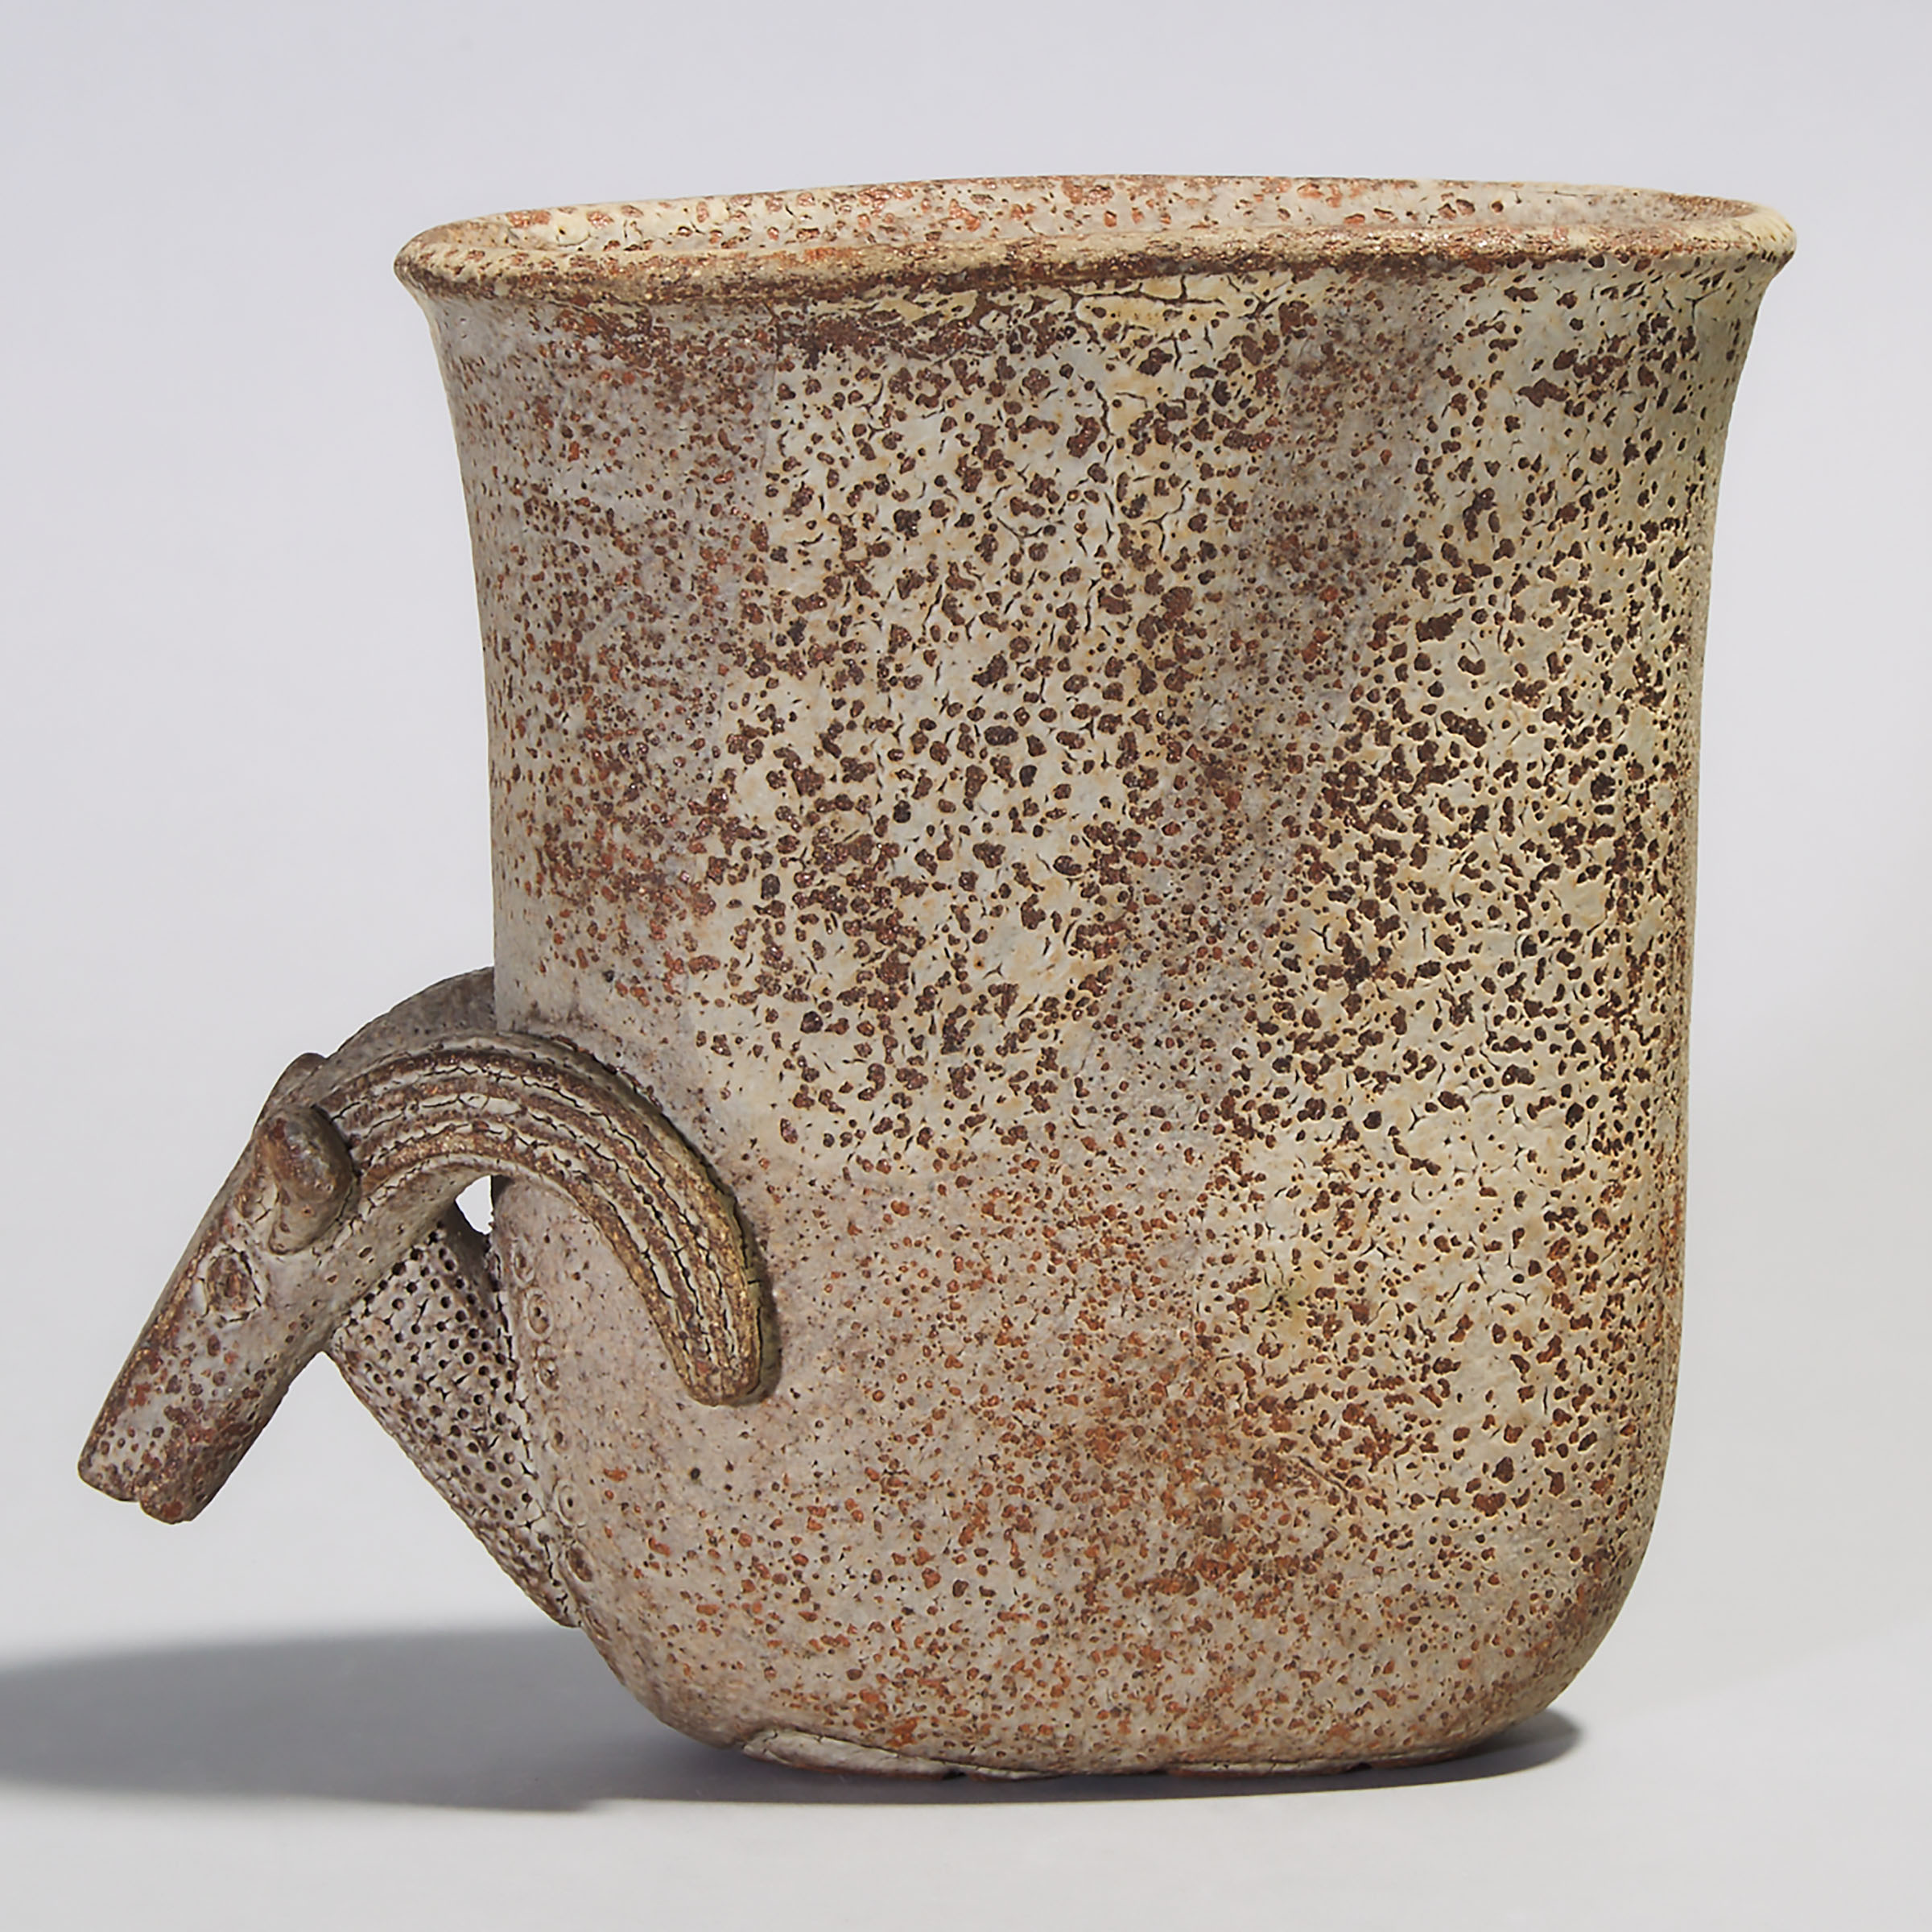 Ian Godfrey (British, 1942-1992), Stoneware Ram Vase, c.1989